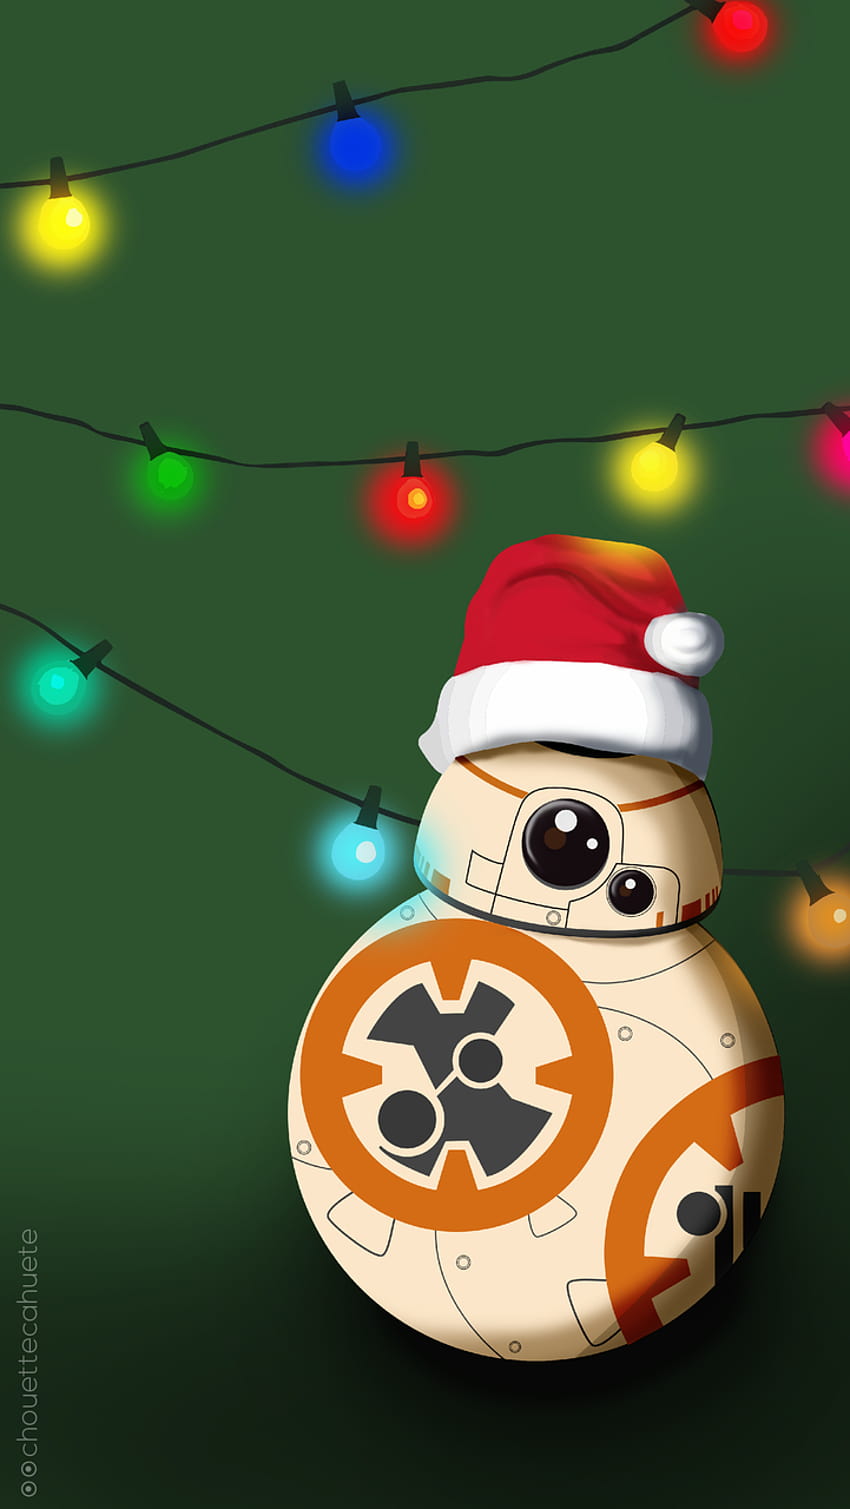 Bạn là một fan hâm mộ của Star Wars và muốn thưởng thức các hình ảnh chất lượng cao trong mùa Giáng sinh? Hãy cùng đến với bộ sưu tập hình ảnh Cool Christmas Star Wars HD để thấy sự độc đáo và tuyệt vời của chúng.